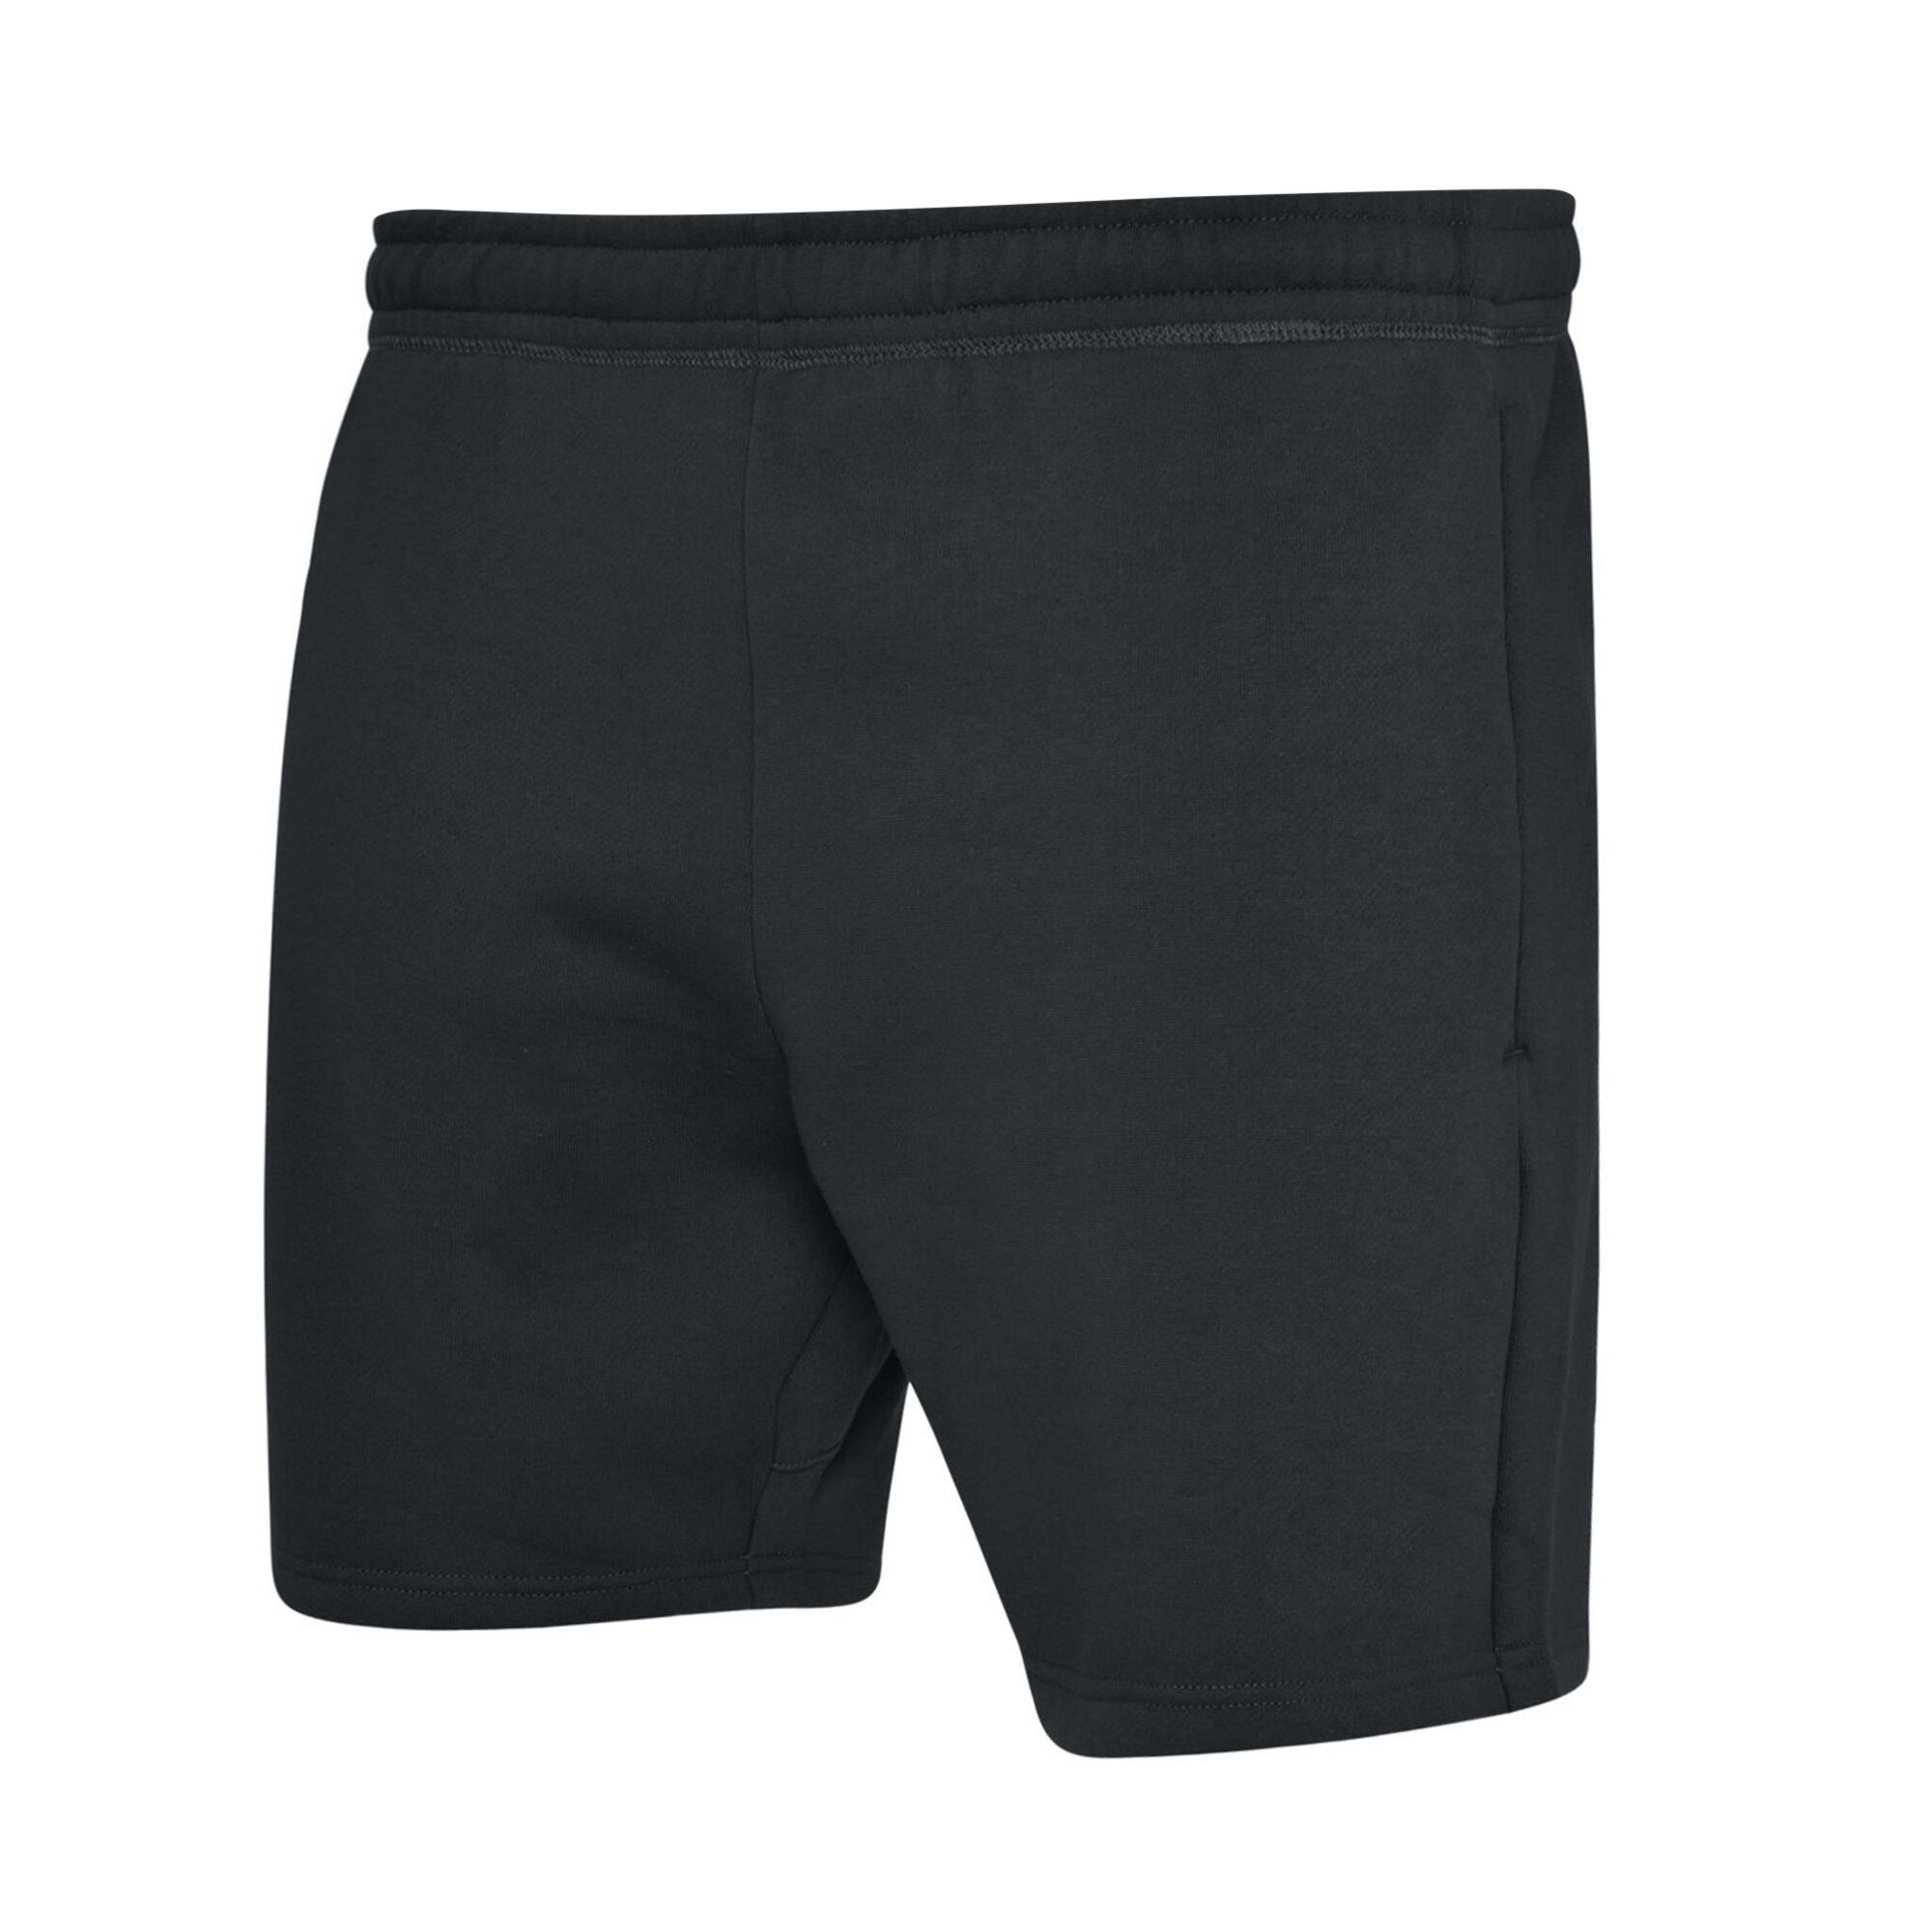 Mens Club Leisure Shorts (Black/White) 2/4